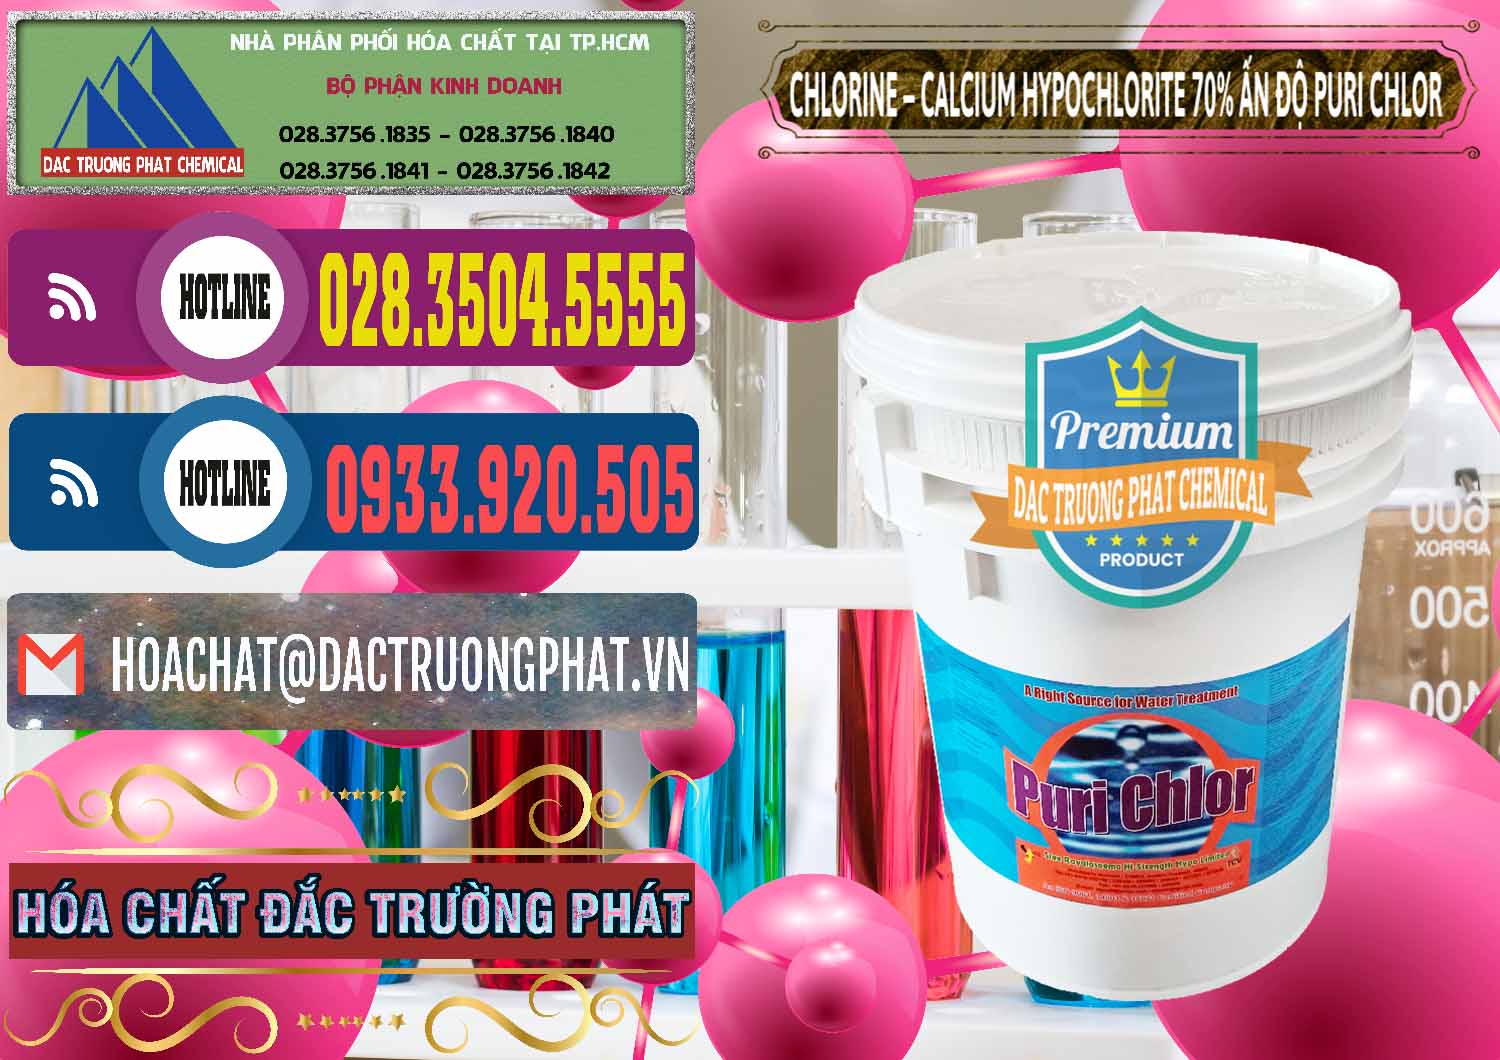 Nơi phân phối _ bán Chlorine – Clorin 70% Puri Chlo Ấn Độ India - 0123 - Công ty chuyên phân phối - cung ứng hóa chất tại TP.HCM - muabanhoachat.com.vn